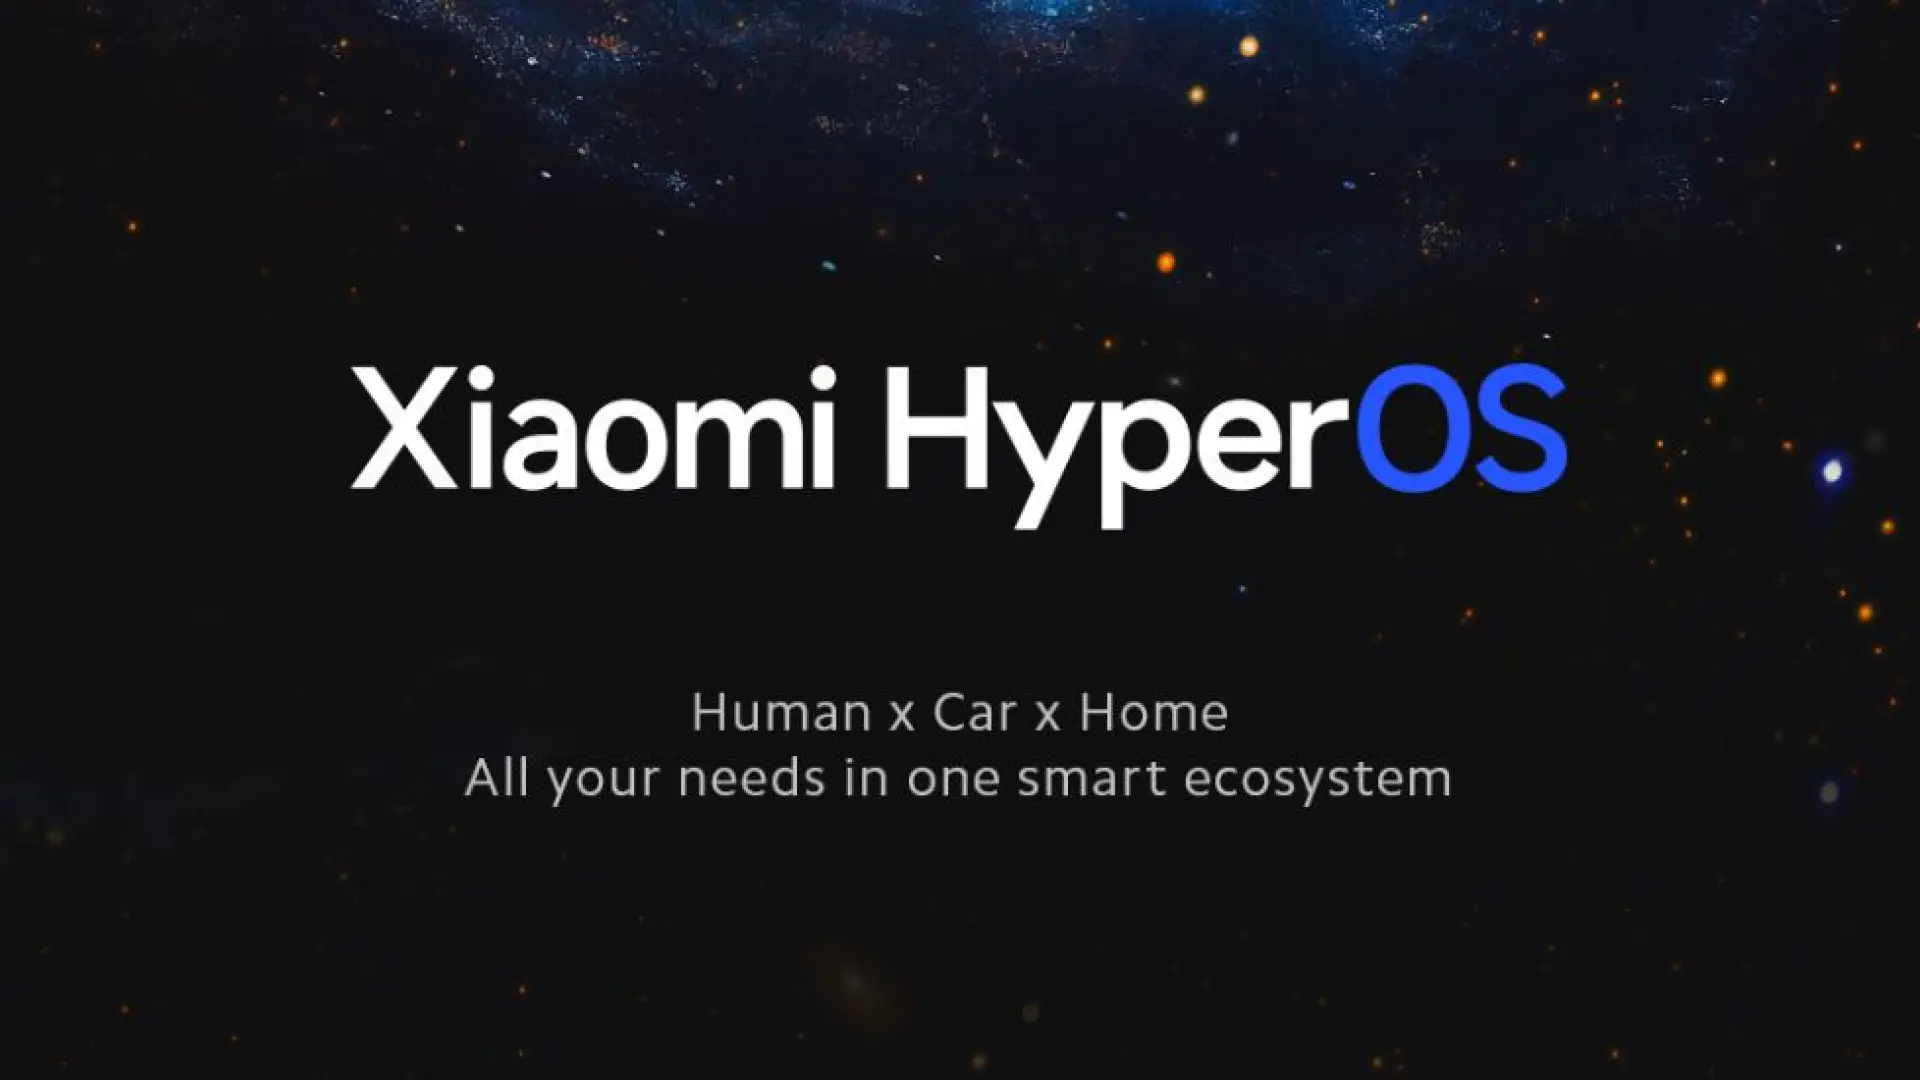 14 smartphones, tabletas y televisores Xiaomi recibirán el sistema operativo HyperOS ya en invierno